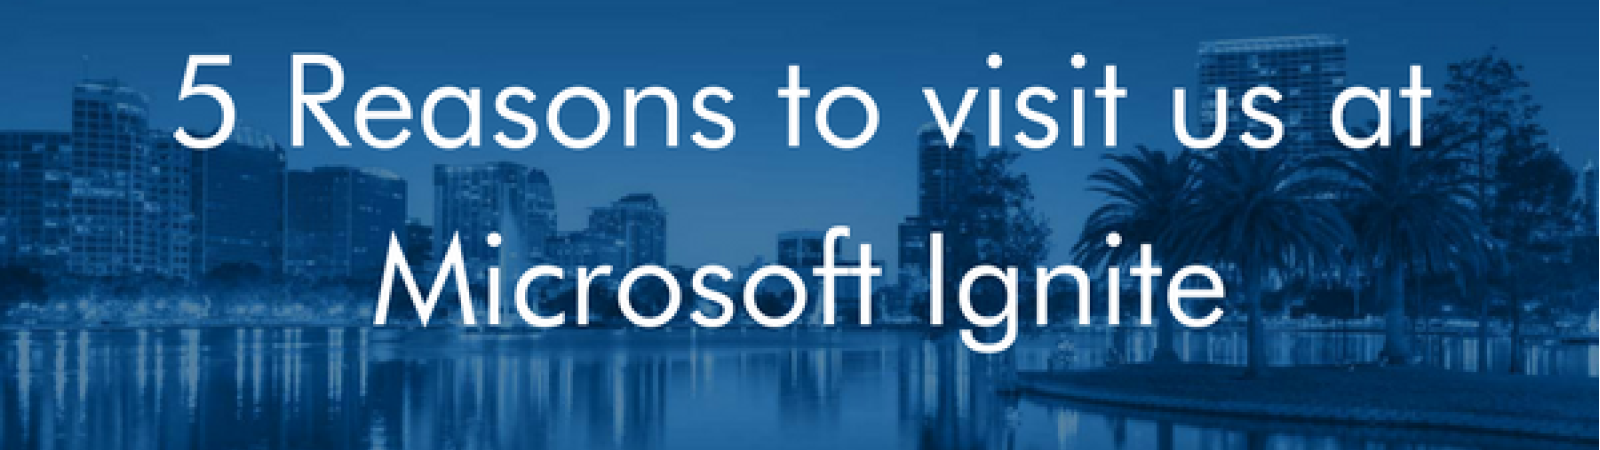 5 Reasons to Visit Us at Microsoft Ignite